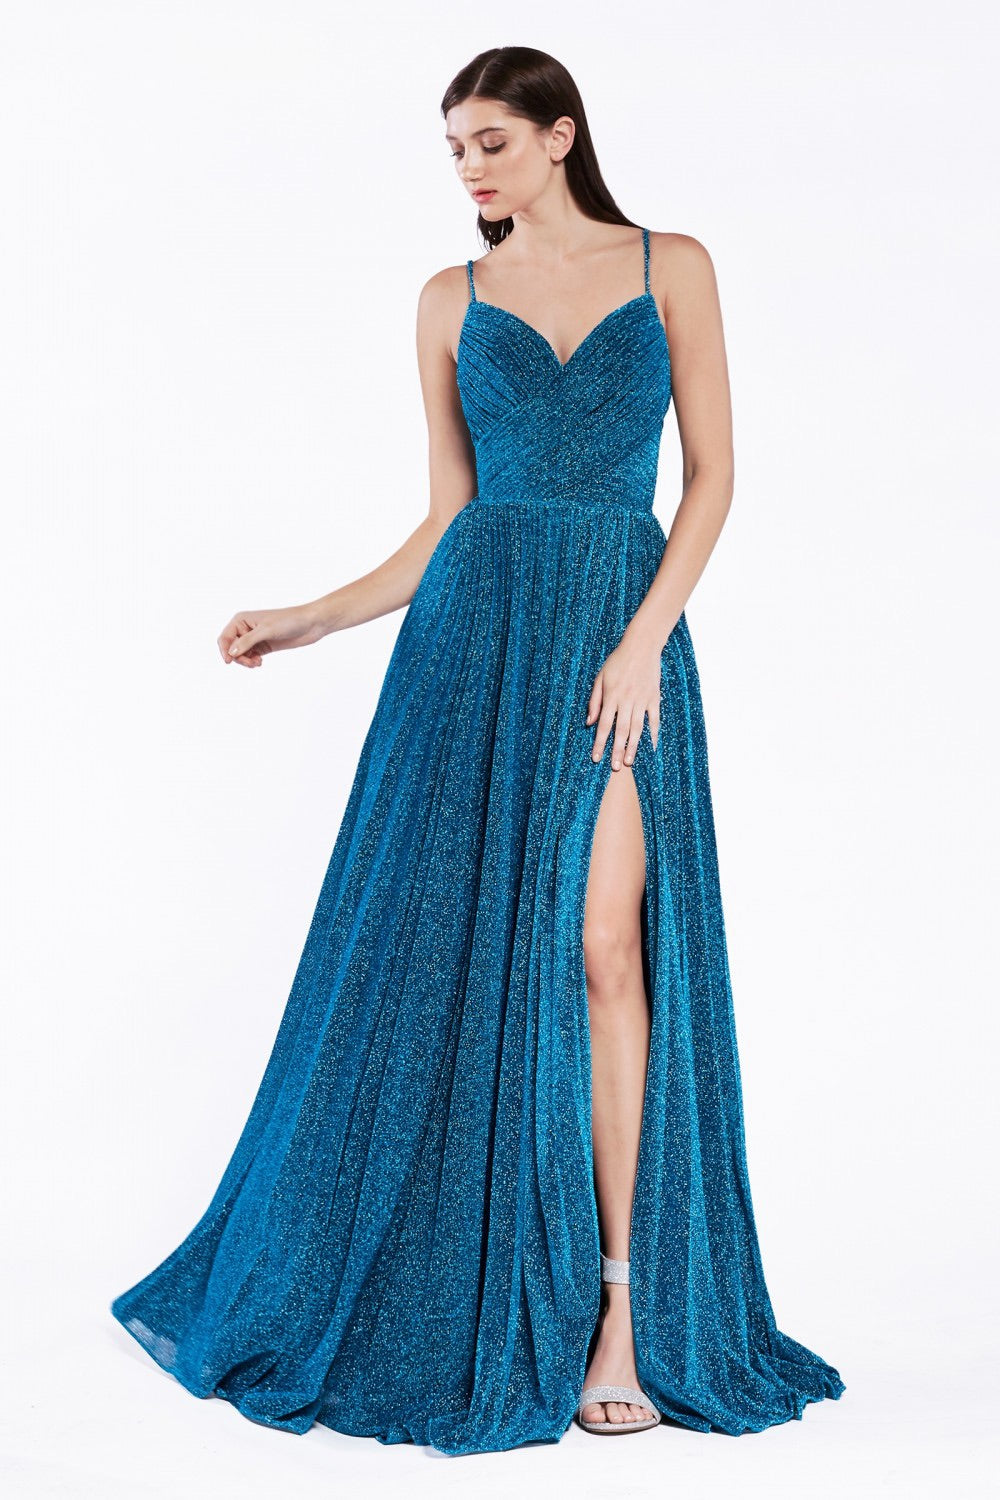 Cinderella Divine CJ534 A-Line Evening Dress - CYC Boutique